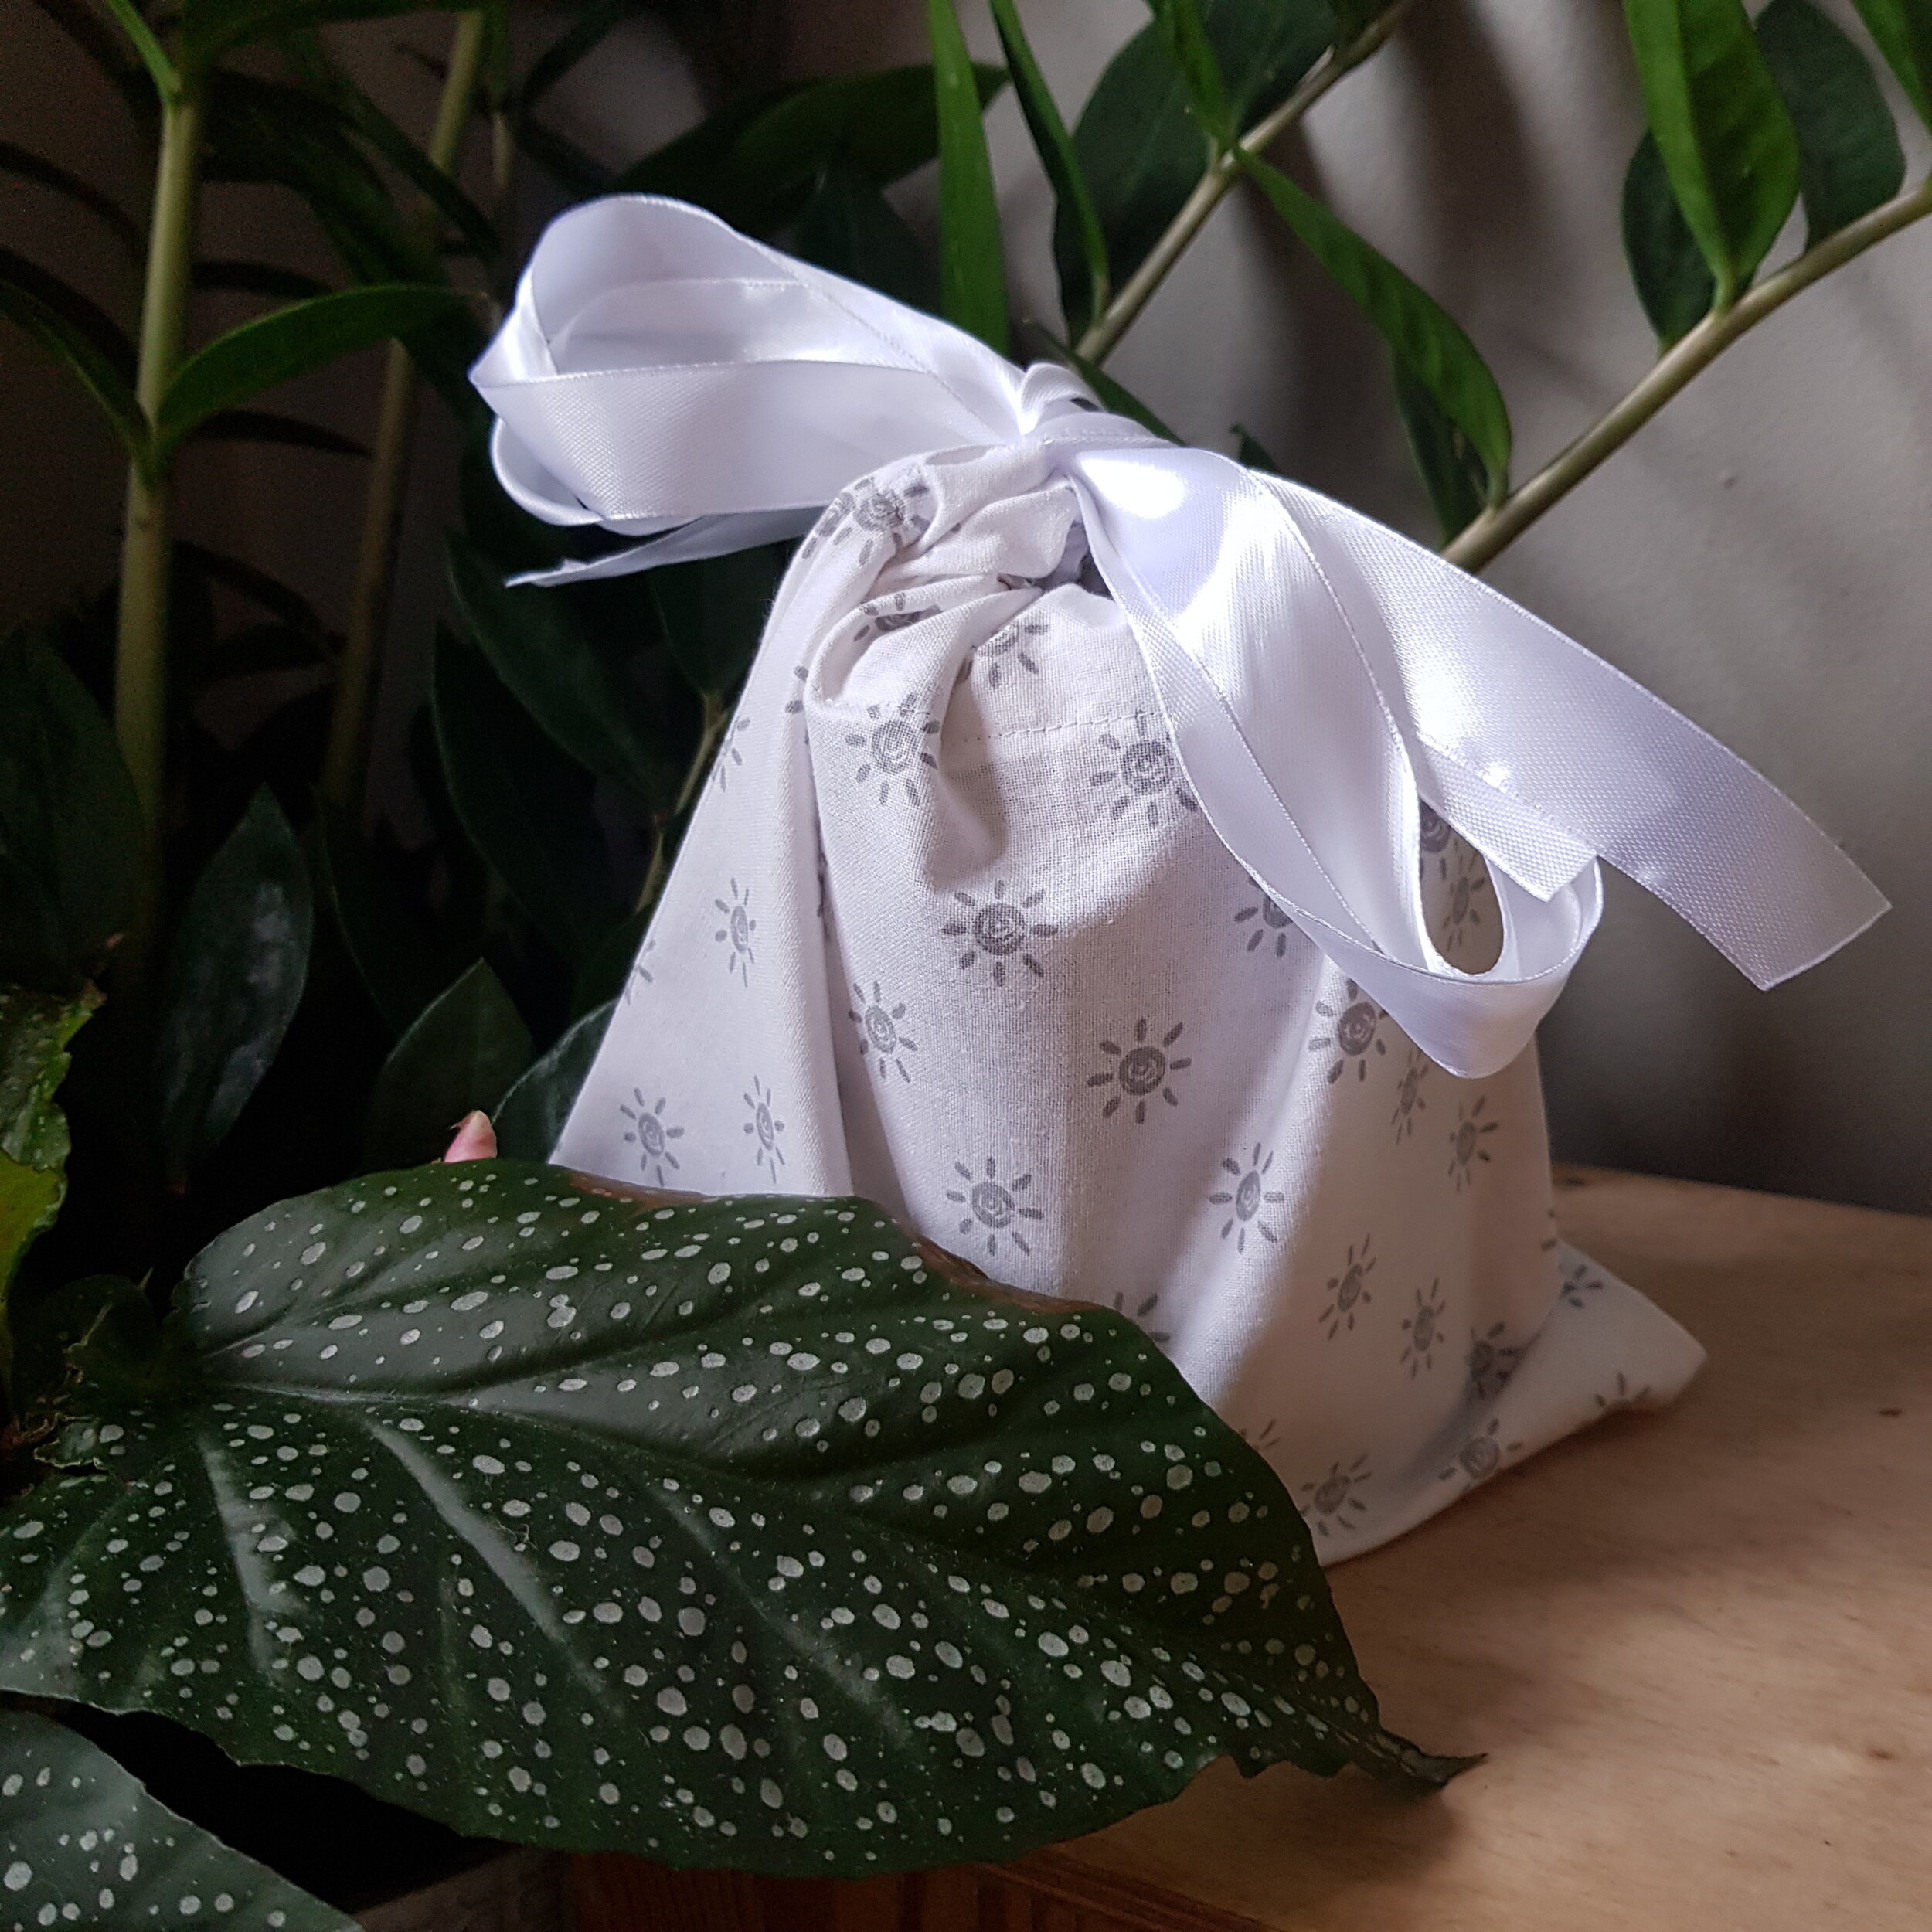 Stunning Large Reusable Fabric Gift Bags for Christmas 🎁